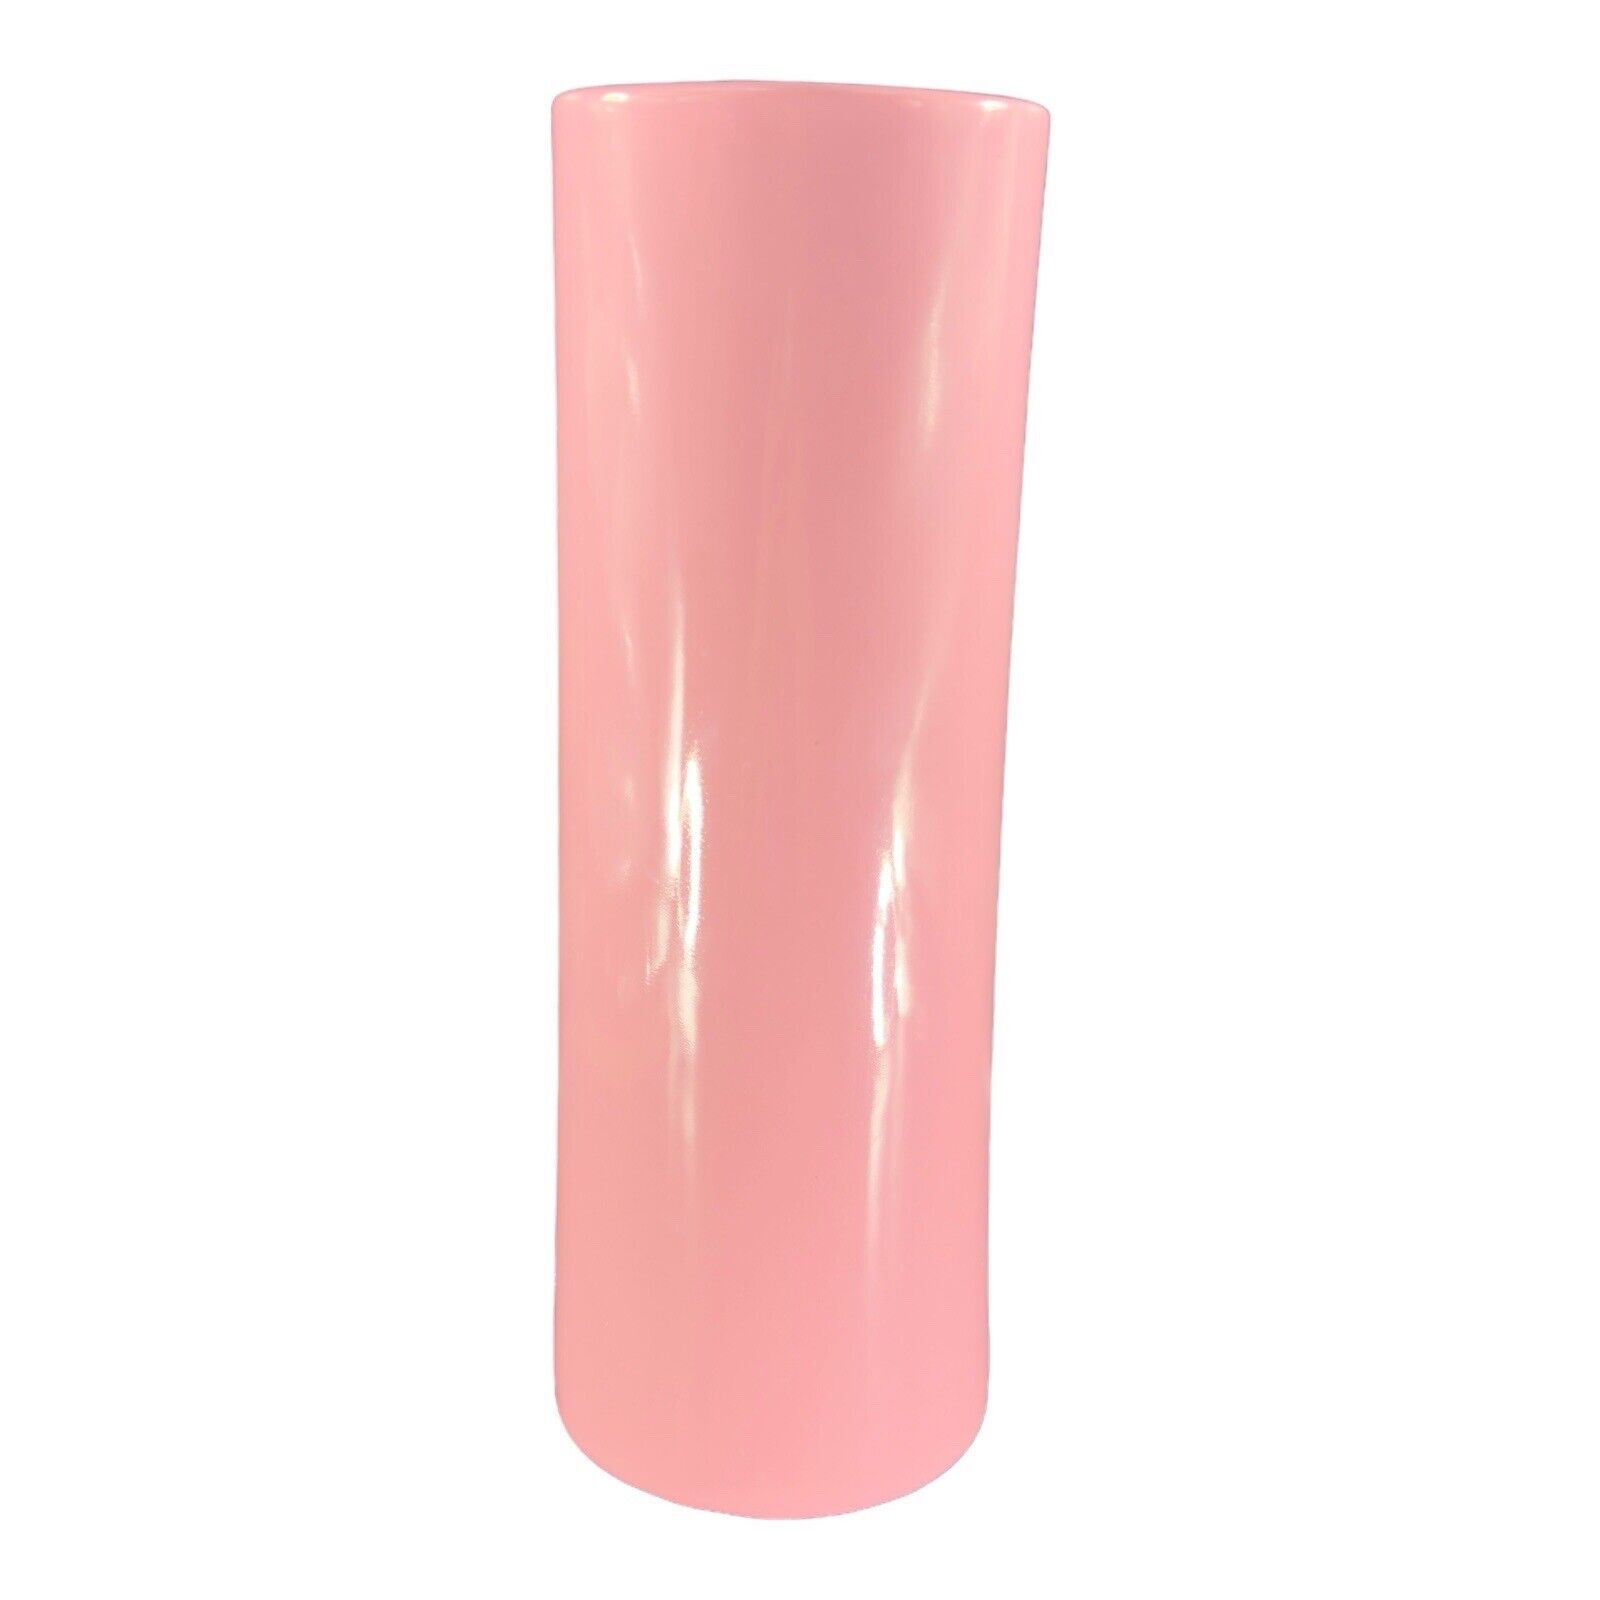 Vintage Royal Haeger Vase Tall Cylinder Pink Glaze Ceramic Pottery MCM VTG